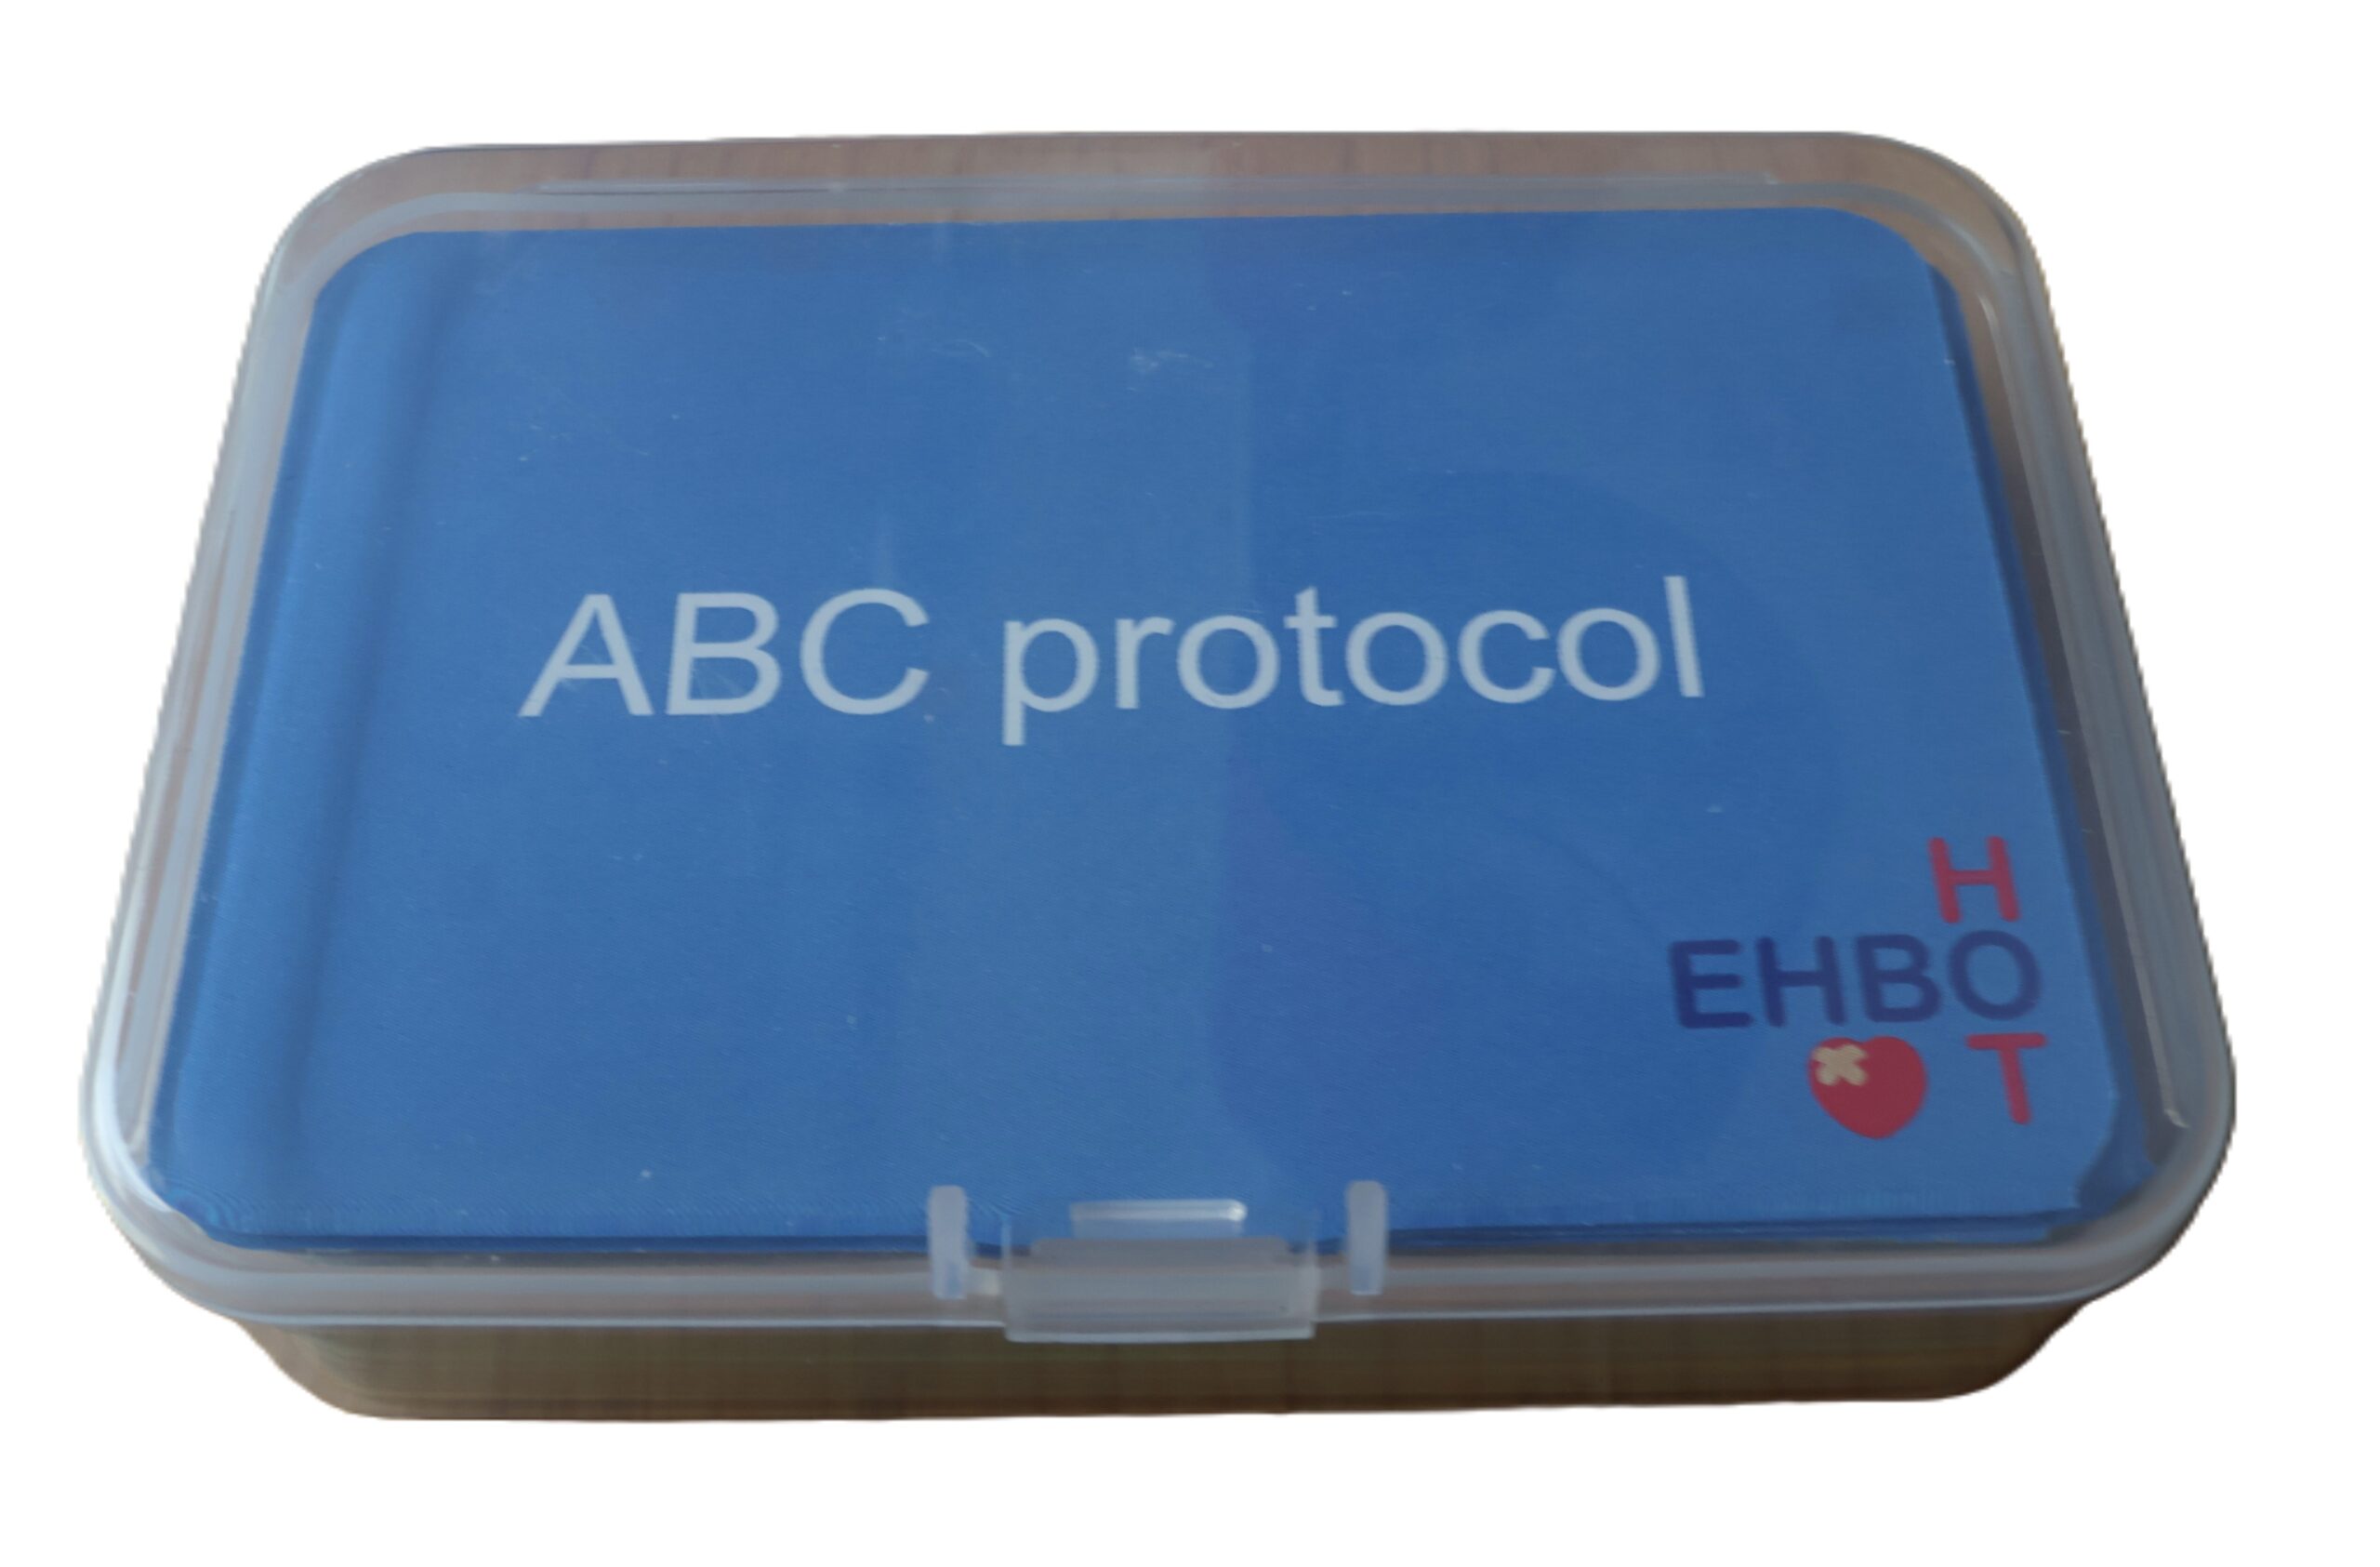 ABC protocol, kaarten in een handzaam plastic doosje